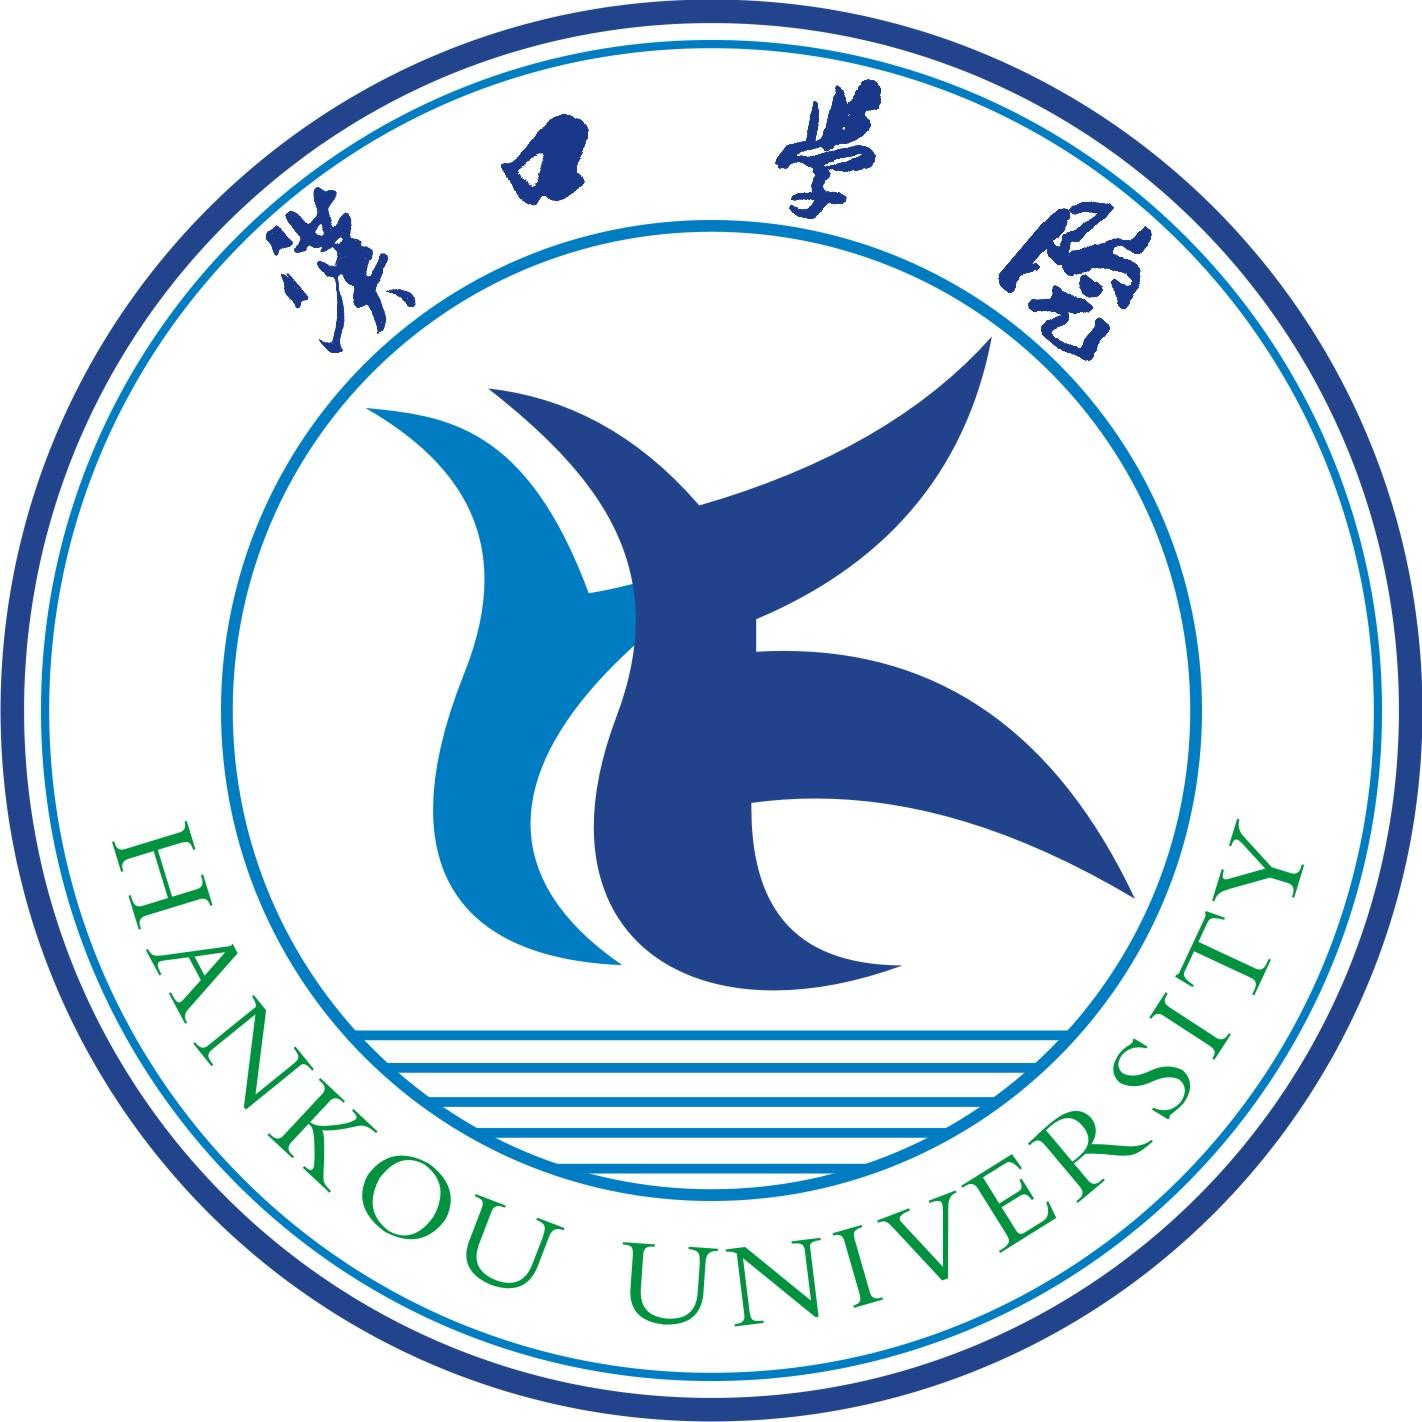 汉口学院(hankou university)位于江城——湖北省武汉市,是一所经国家